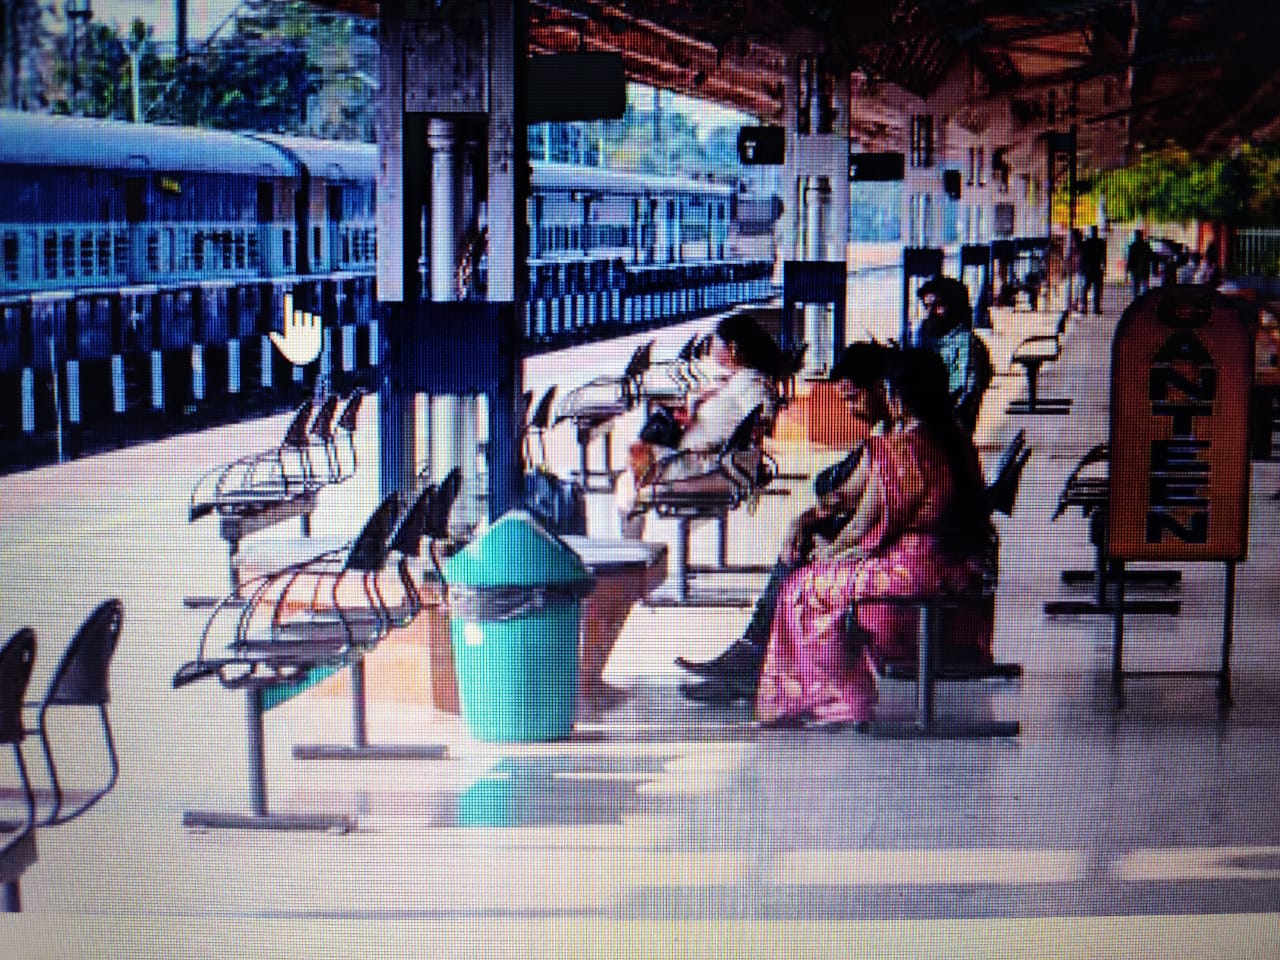 रेलवे स्टेशनों के आधुनिकीकरण की नयी नीति : भारतीय रेलवे के लिए अमृत भारत स्टेशन योजना